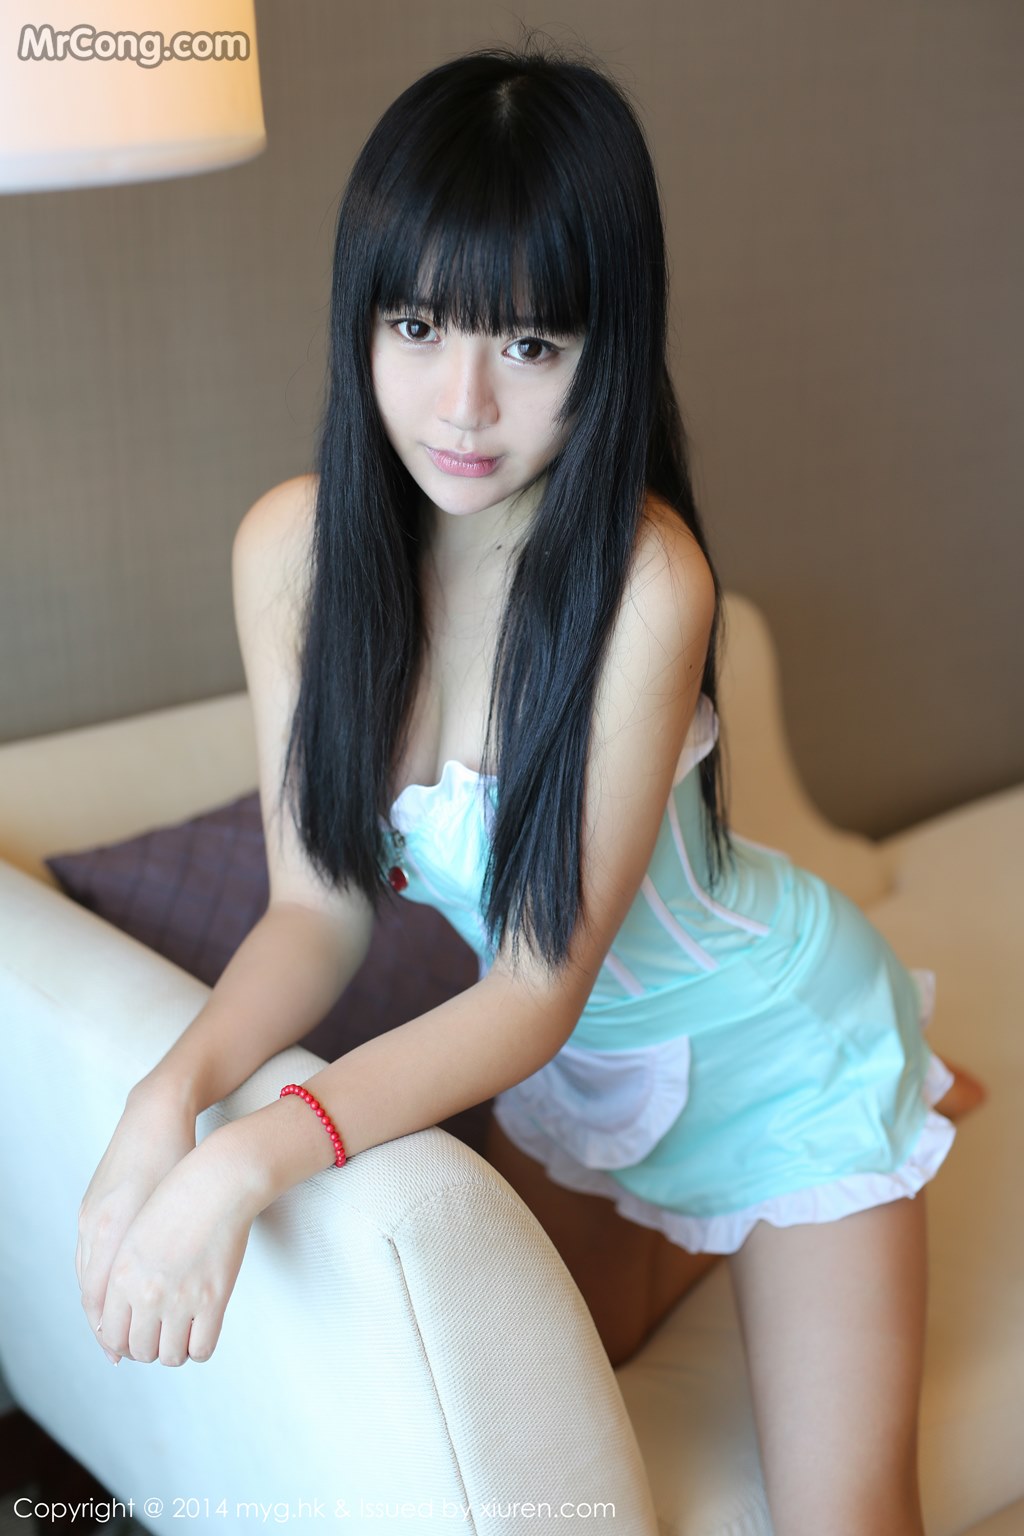 MyGirl Vol.075: Model Ba Bao icey (八宝 icey) (67 photos)